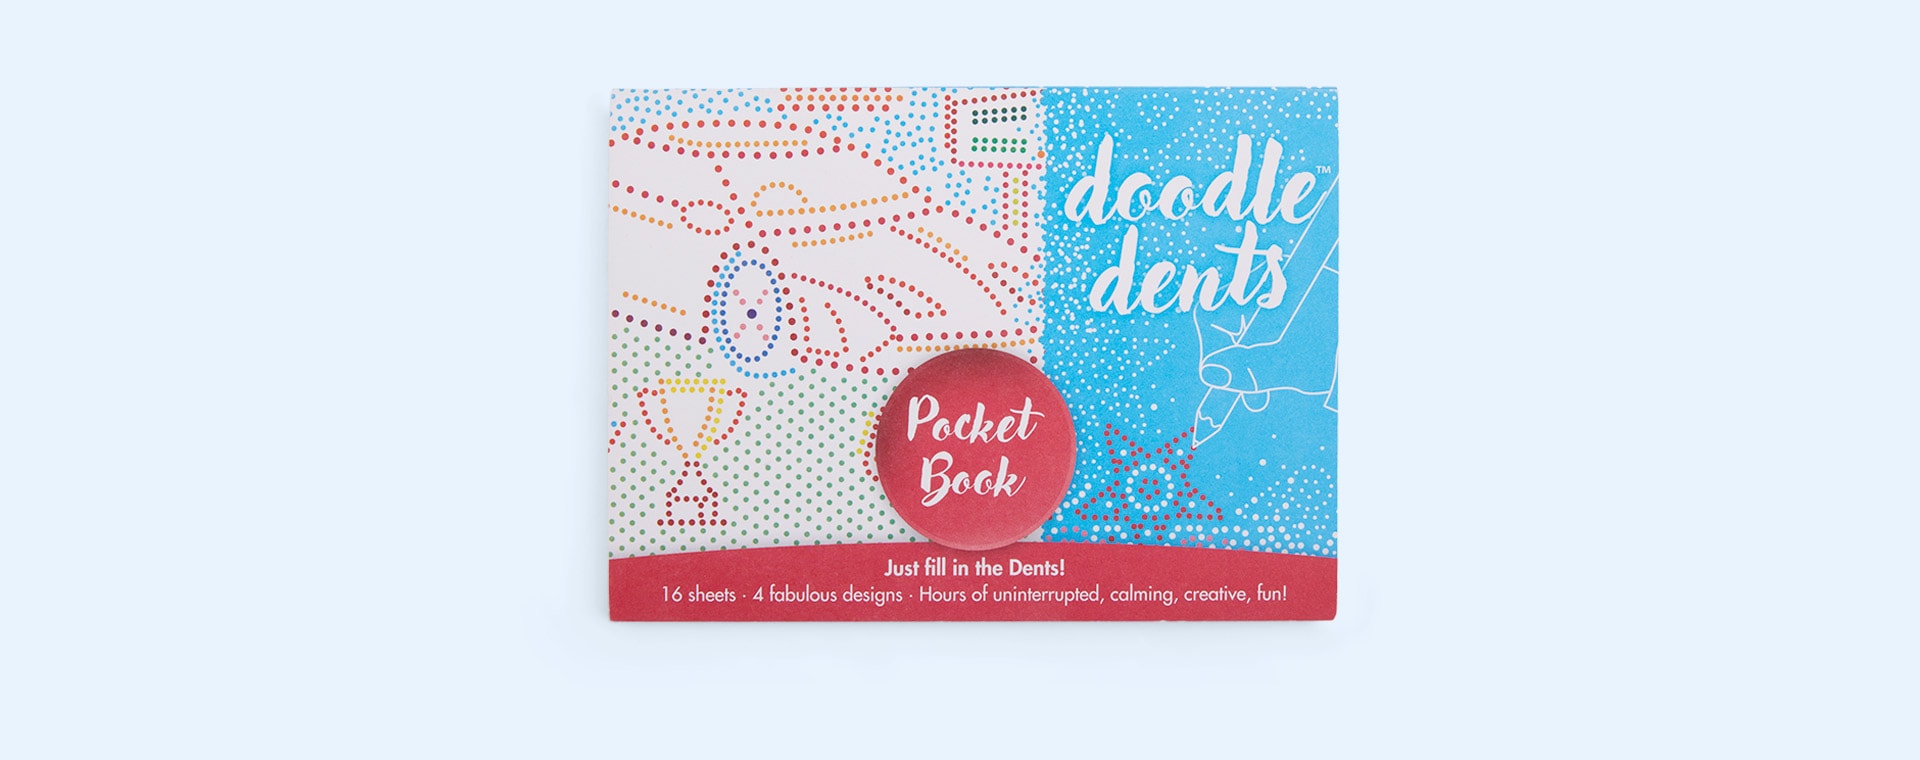 Pocket Doodle Dents Doodle Dents - Pocket